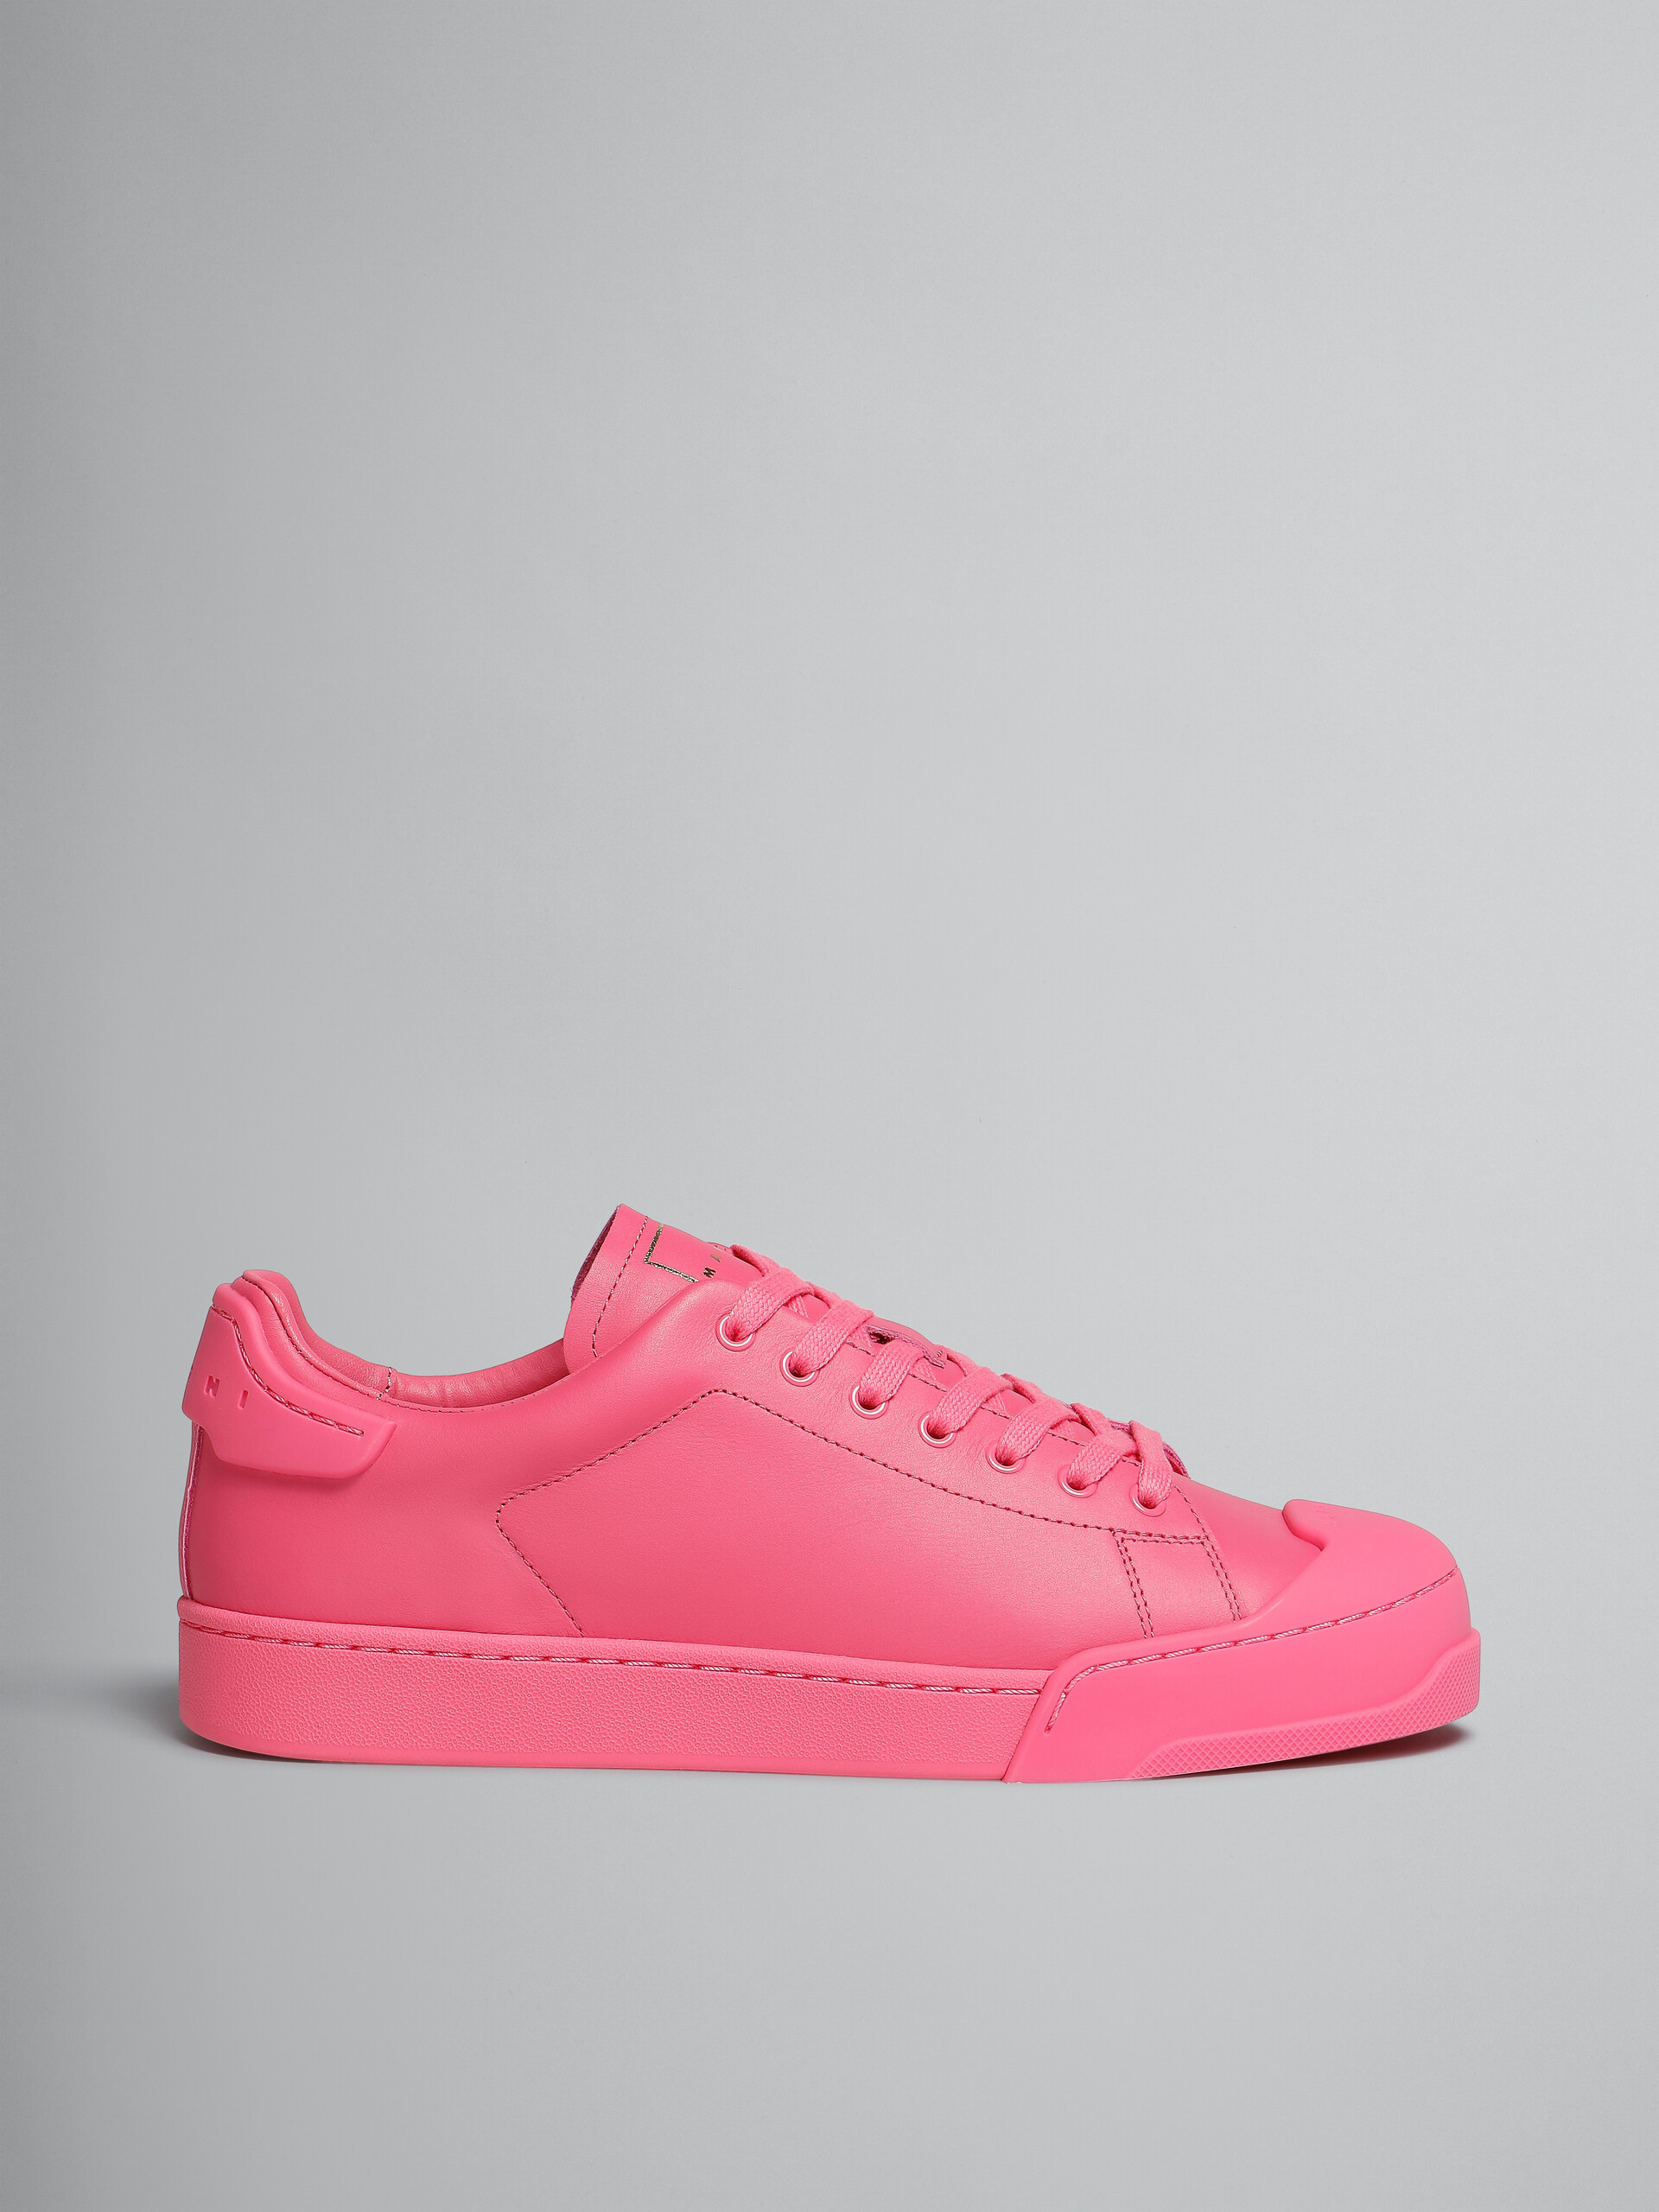 Pinkfarbene Sneakers Dada Bumper aus Leder - Sneakers - Image 1